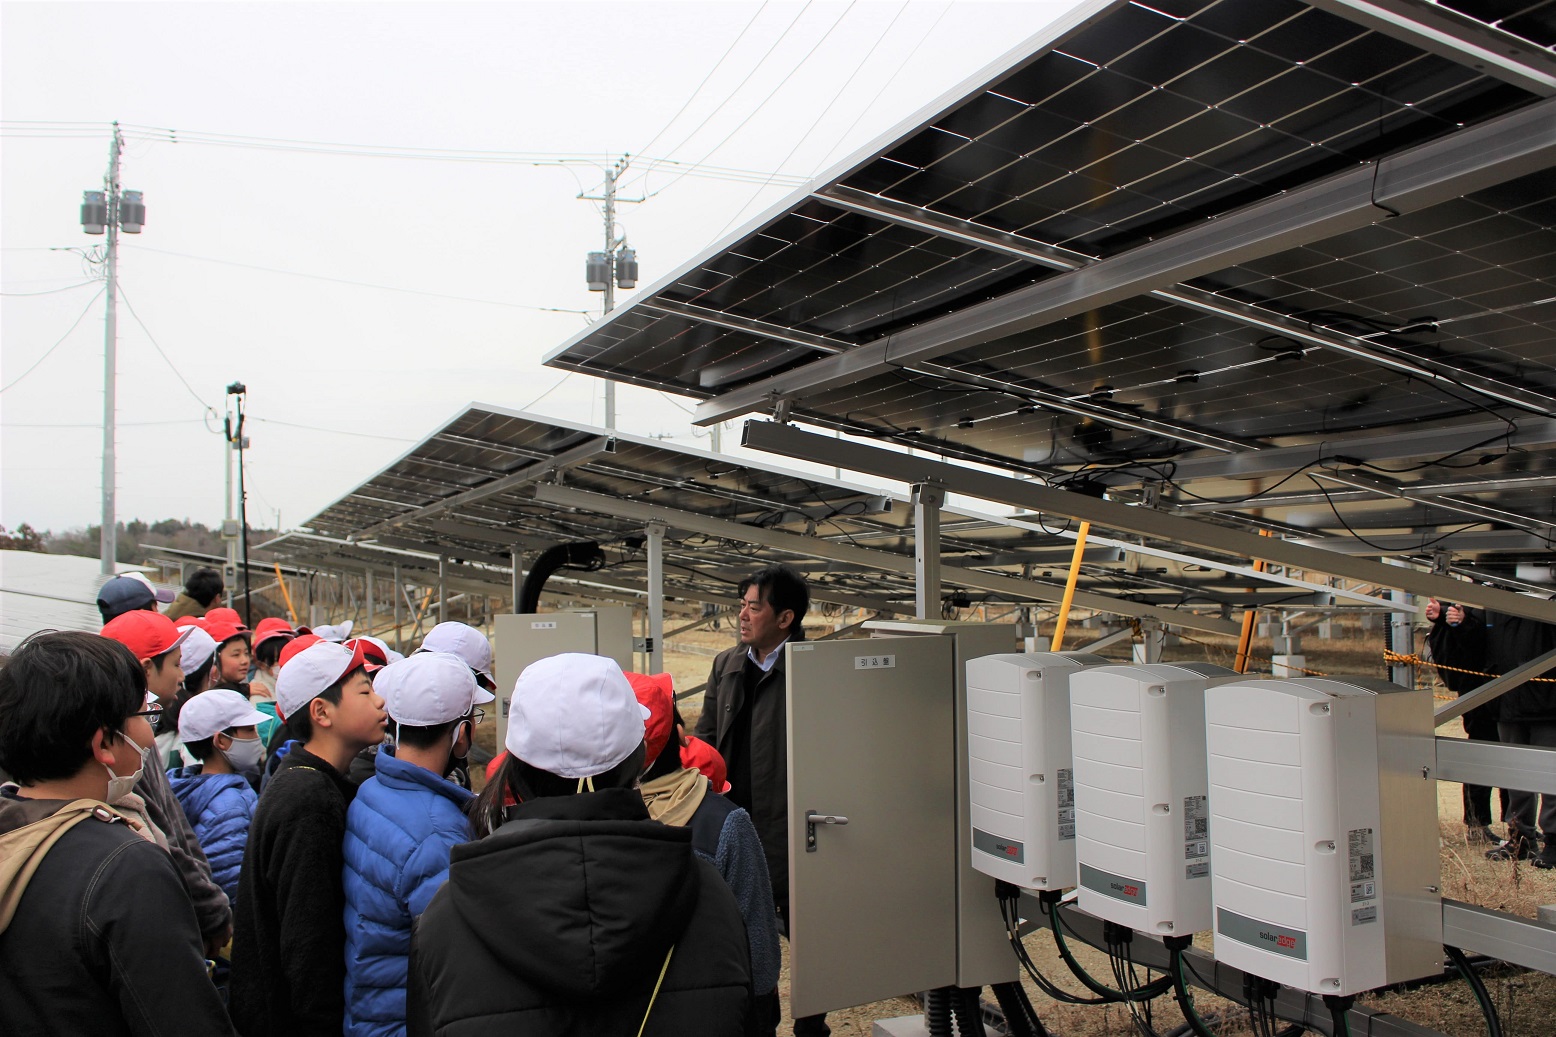 宇都宮市立城山中央小学校で「エネルギーと太陽光発電」をテーマに出張授業を実施しました